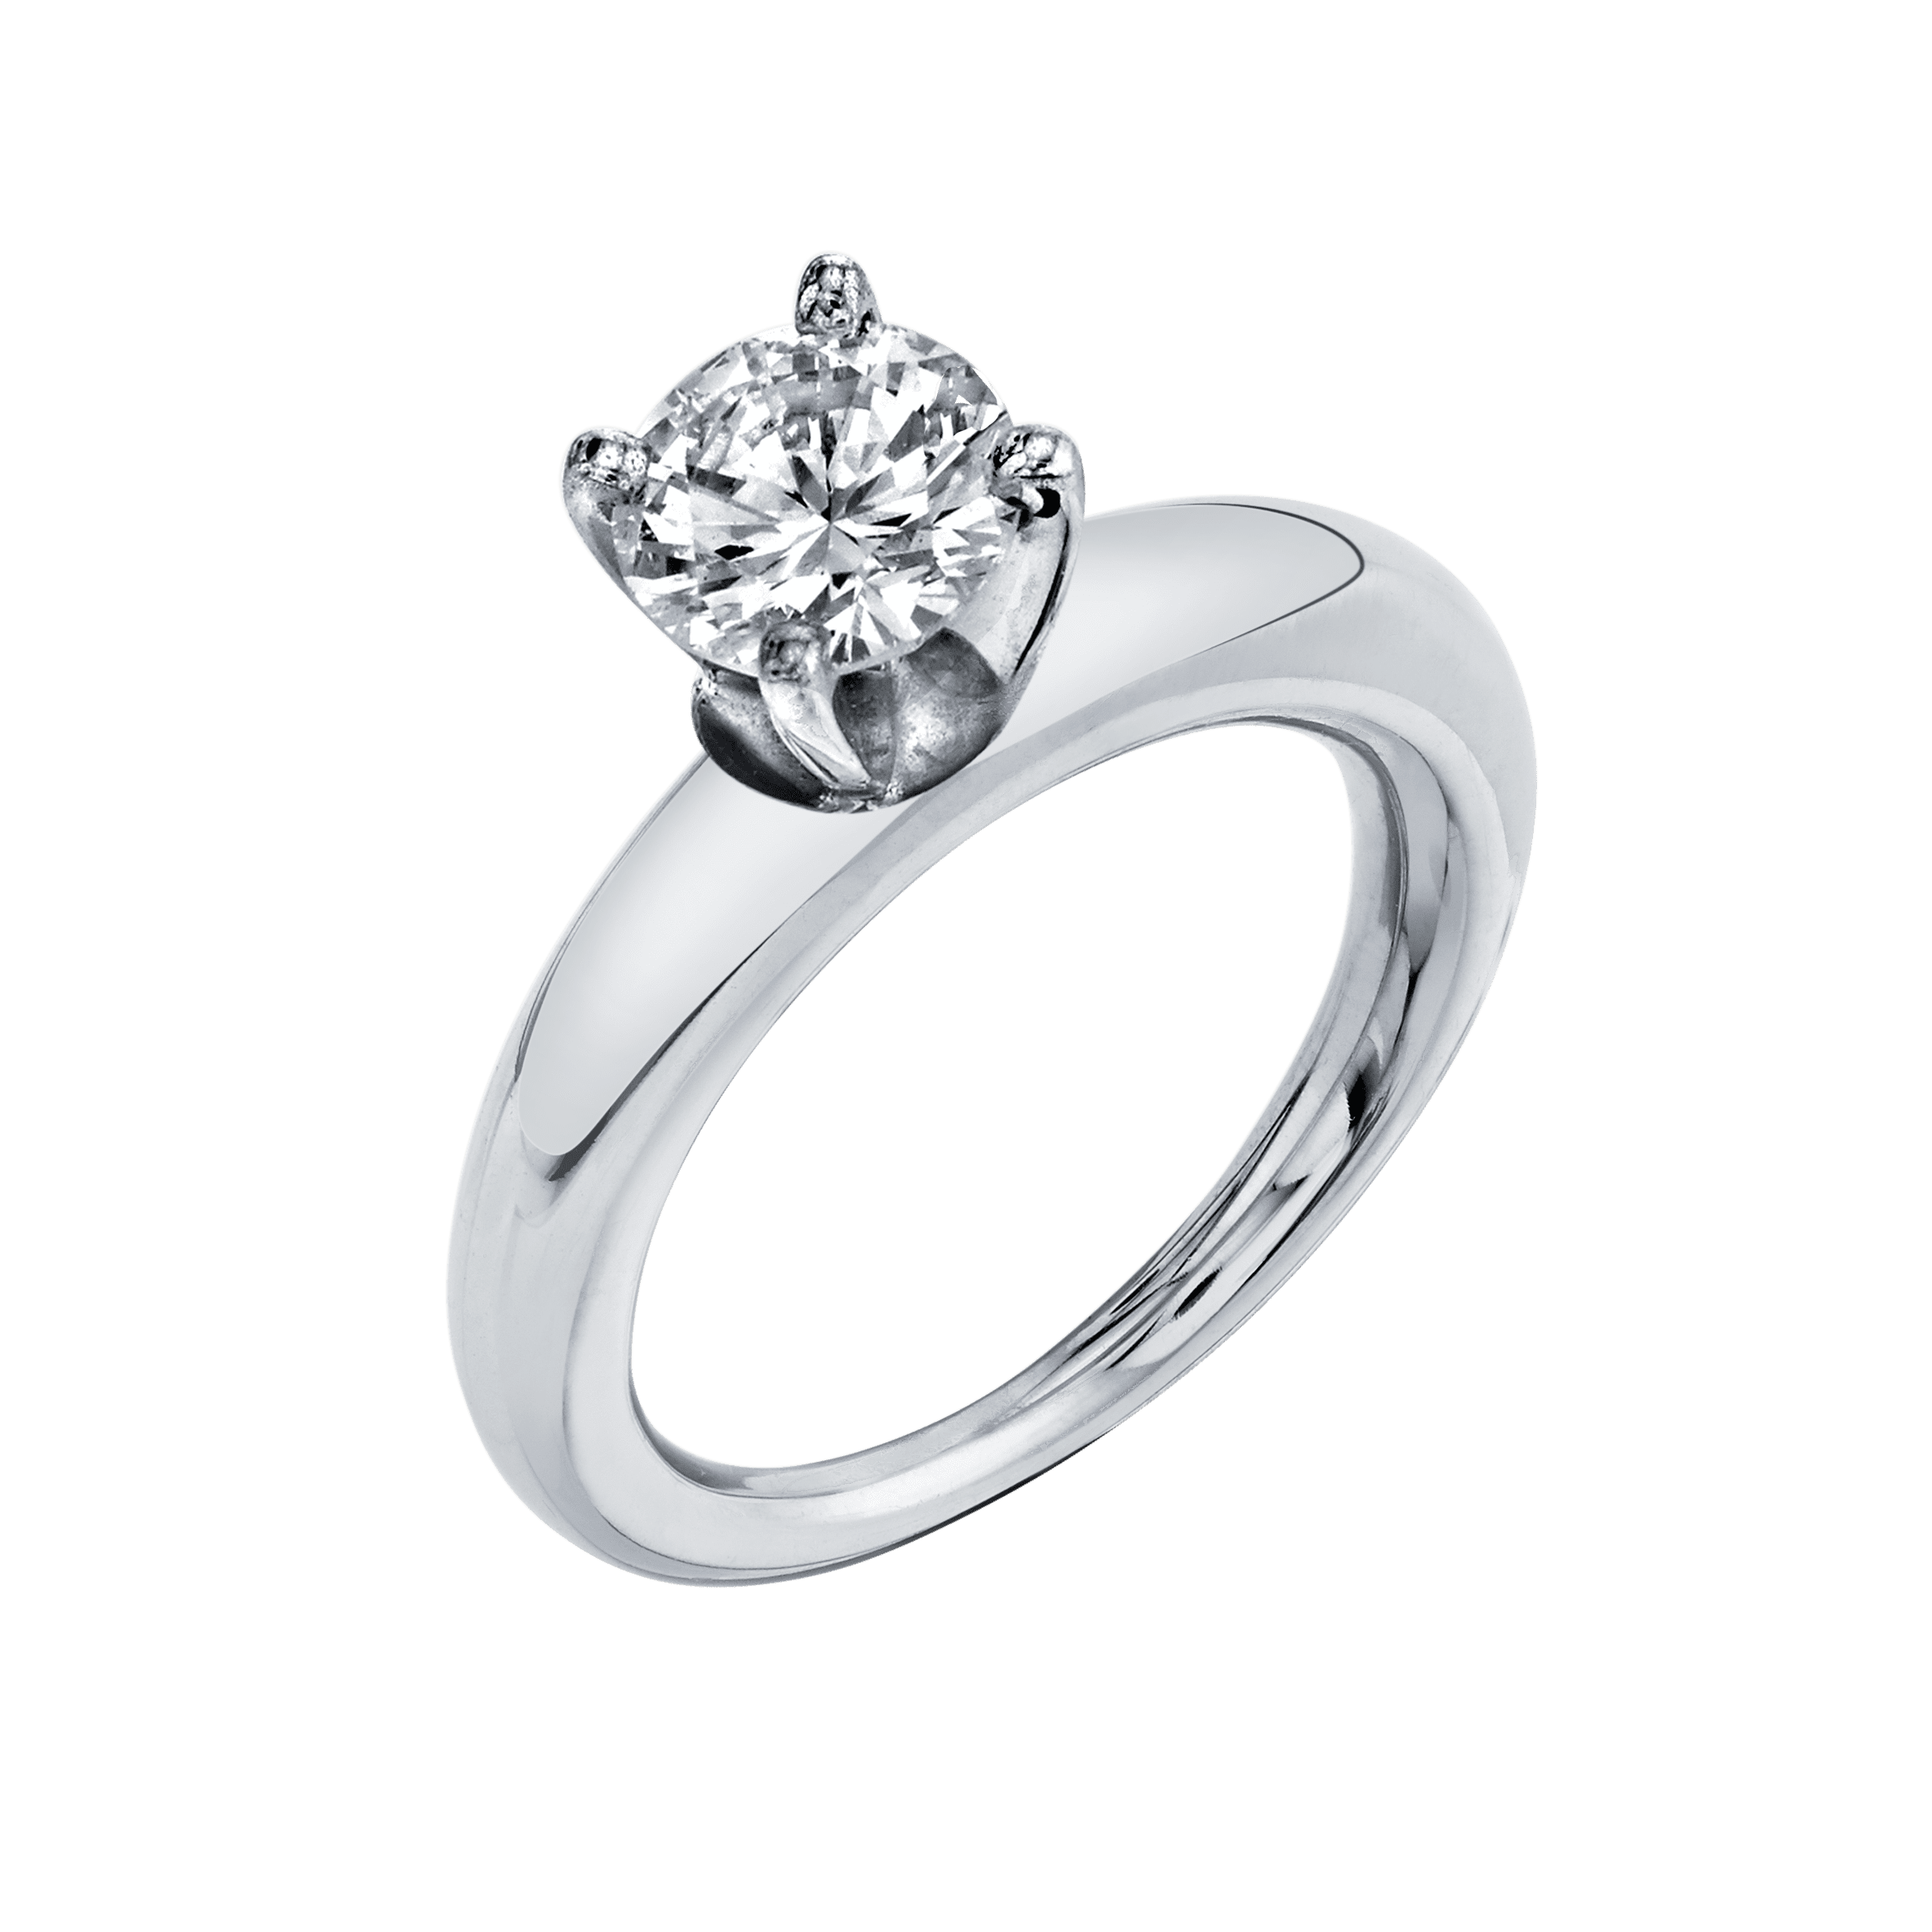 Rising Tusk Ring with Round Diamond